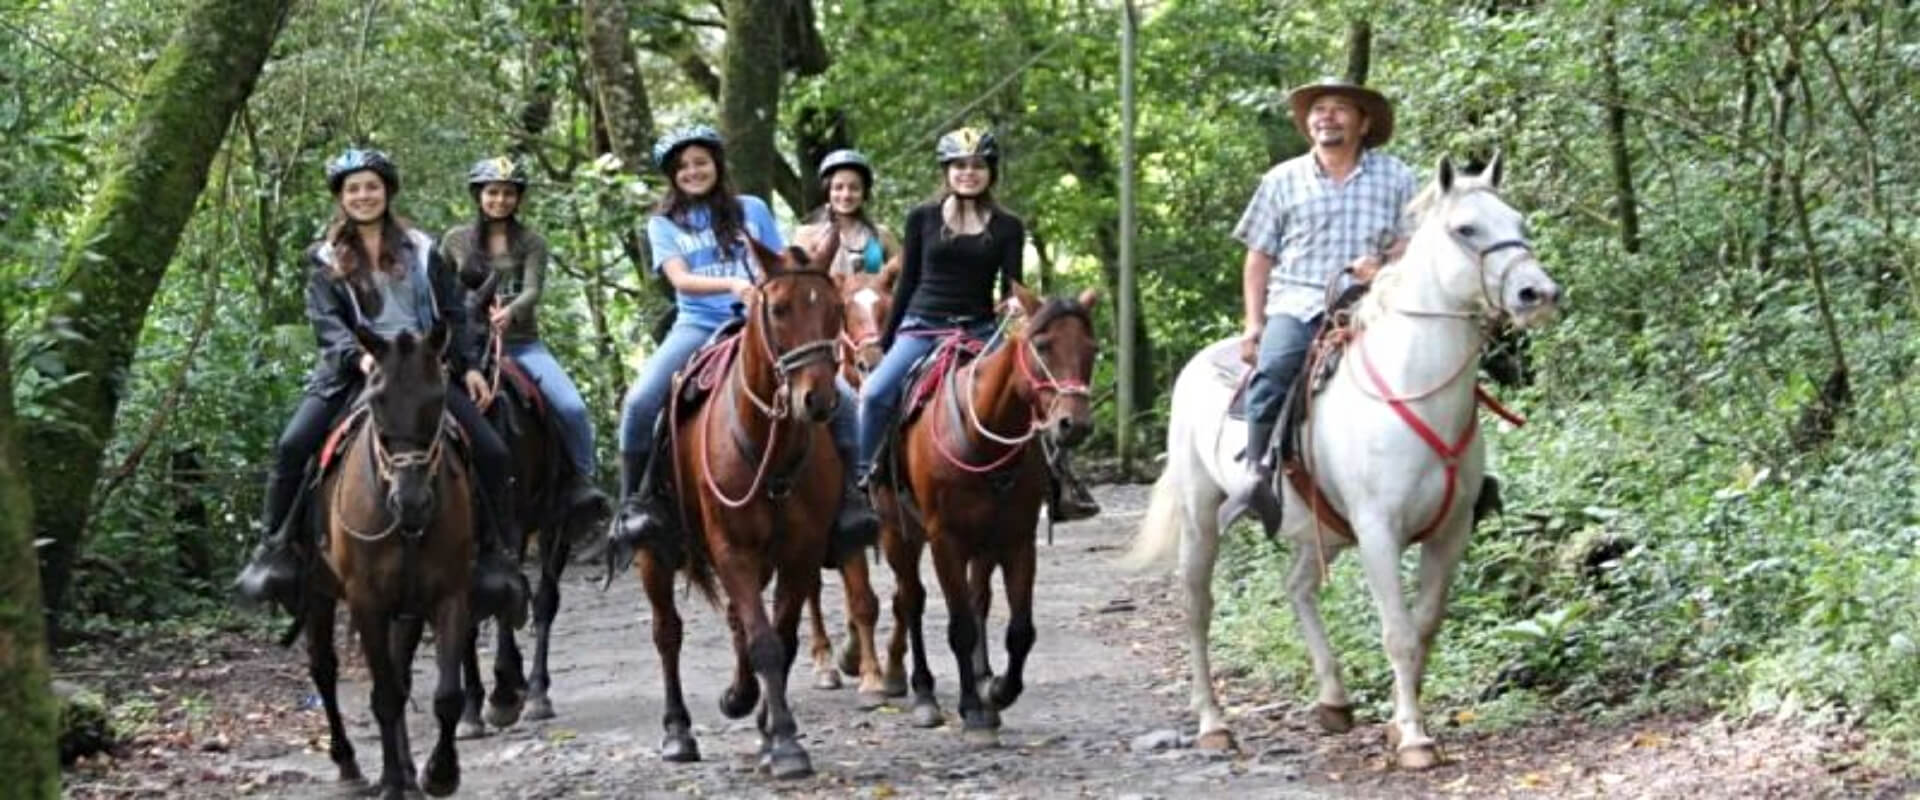 Rio Celeste National Park Guided Hike | Costa Rica Jade Tours